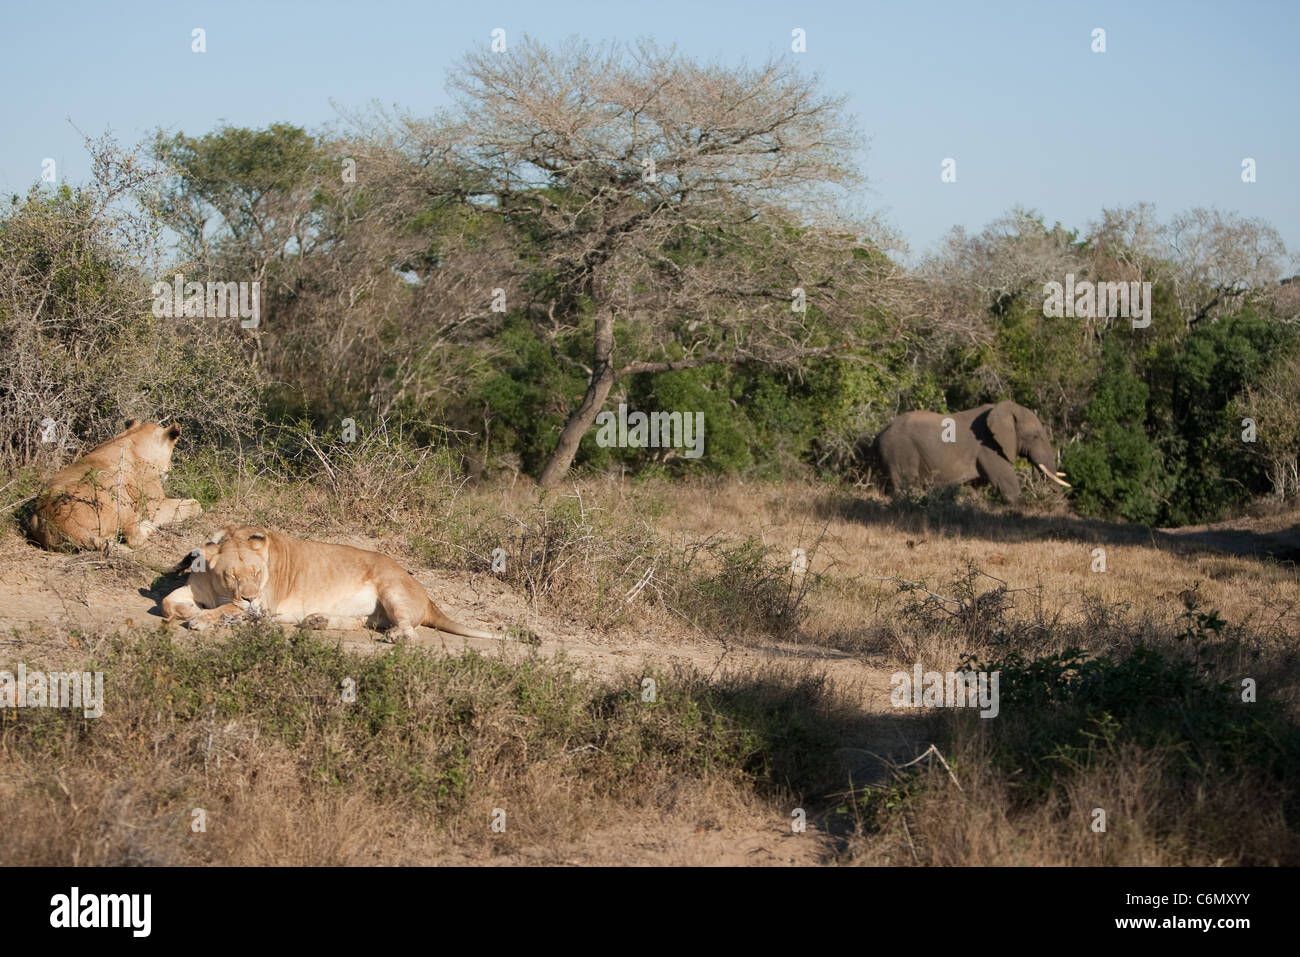 Les Lions se reposant et un éléphant à proximité de navigation Banque D'Images